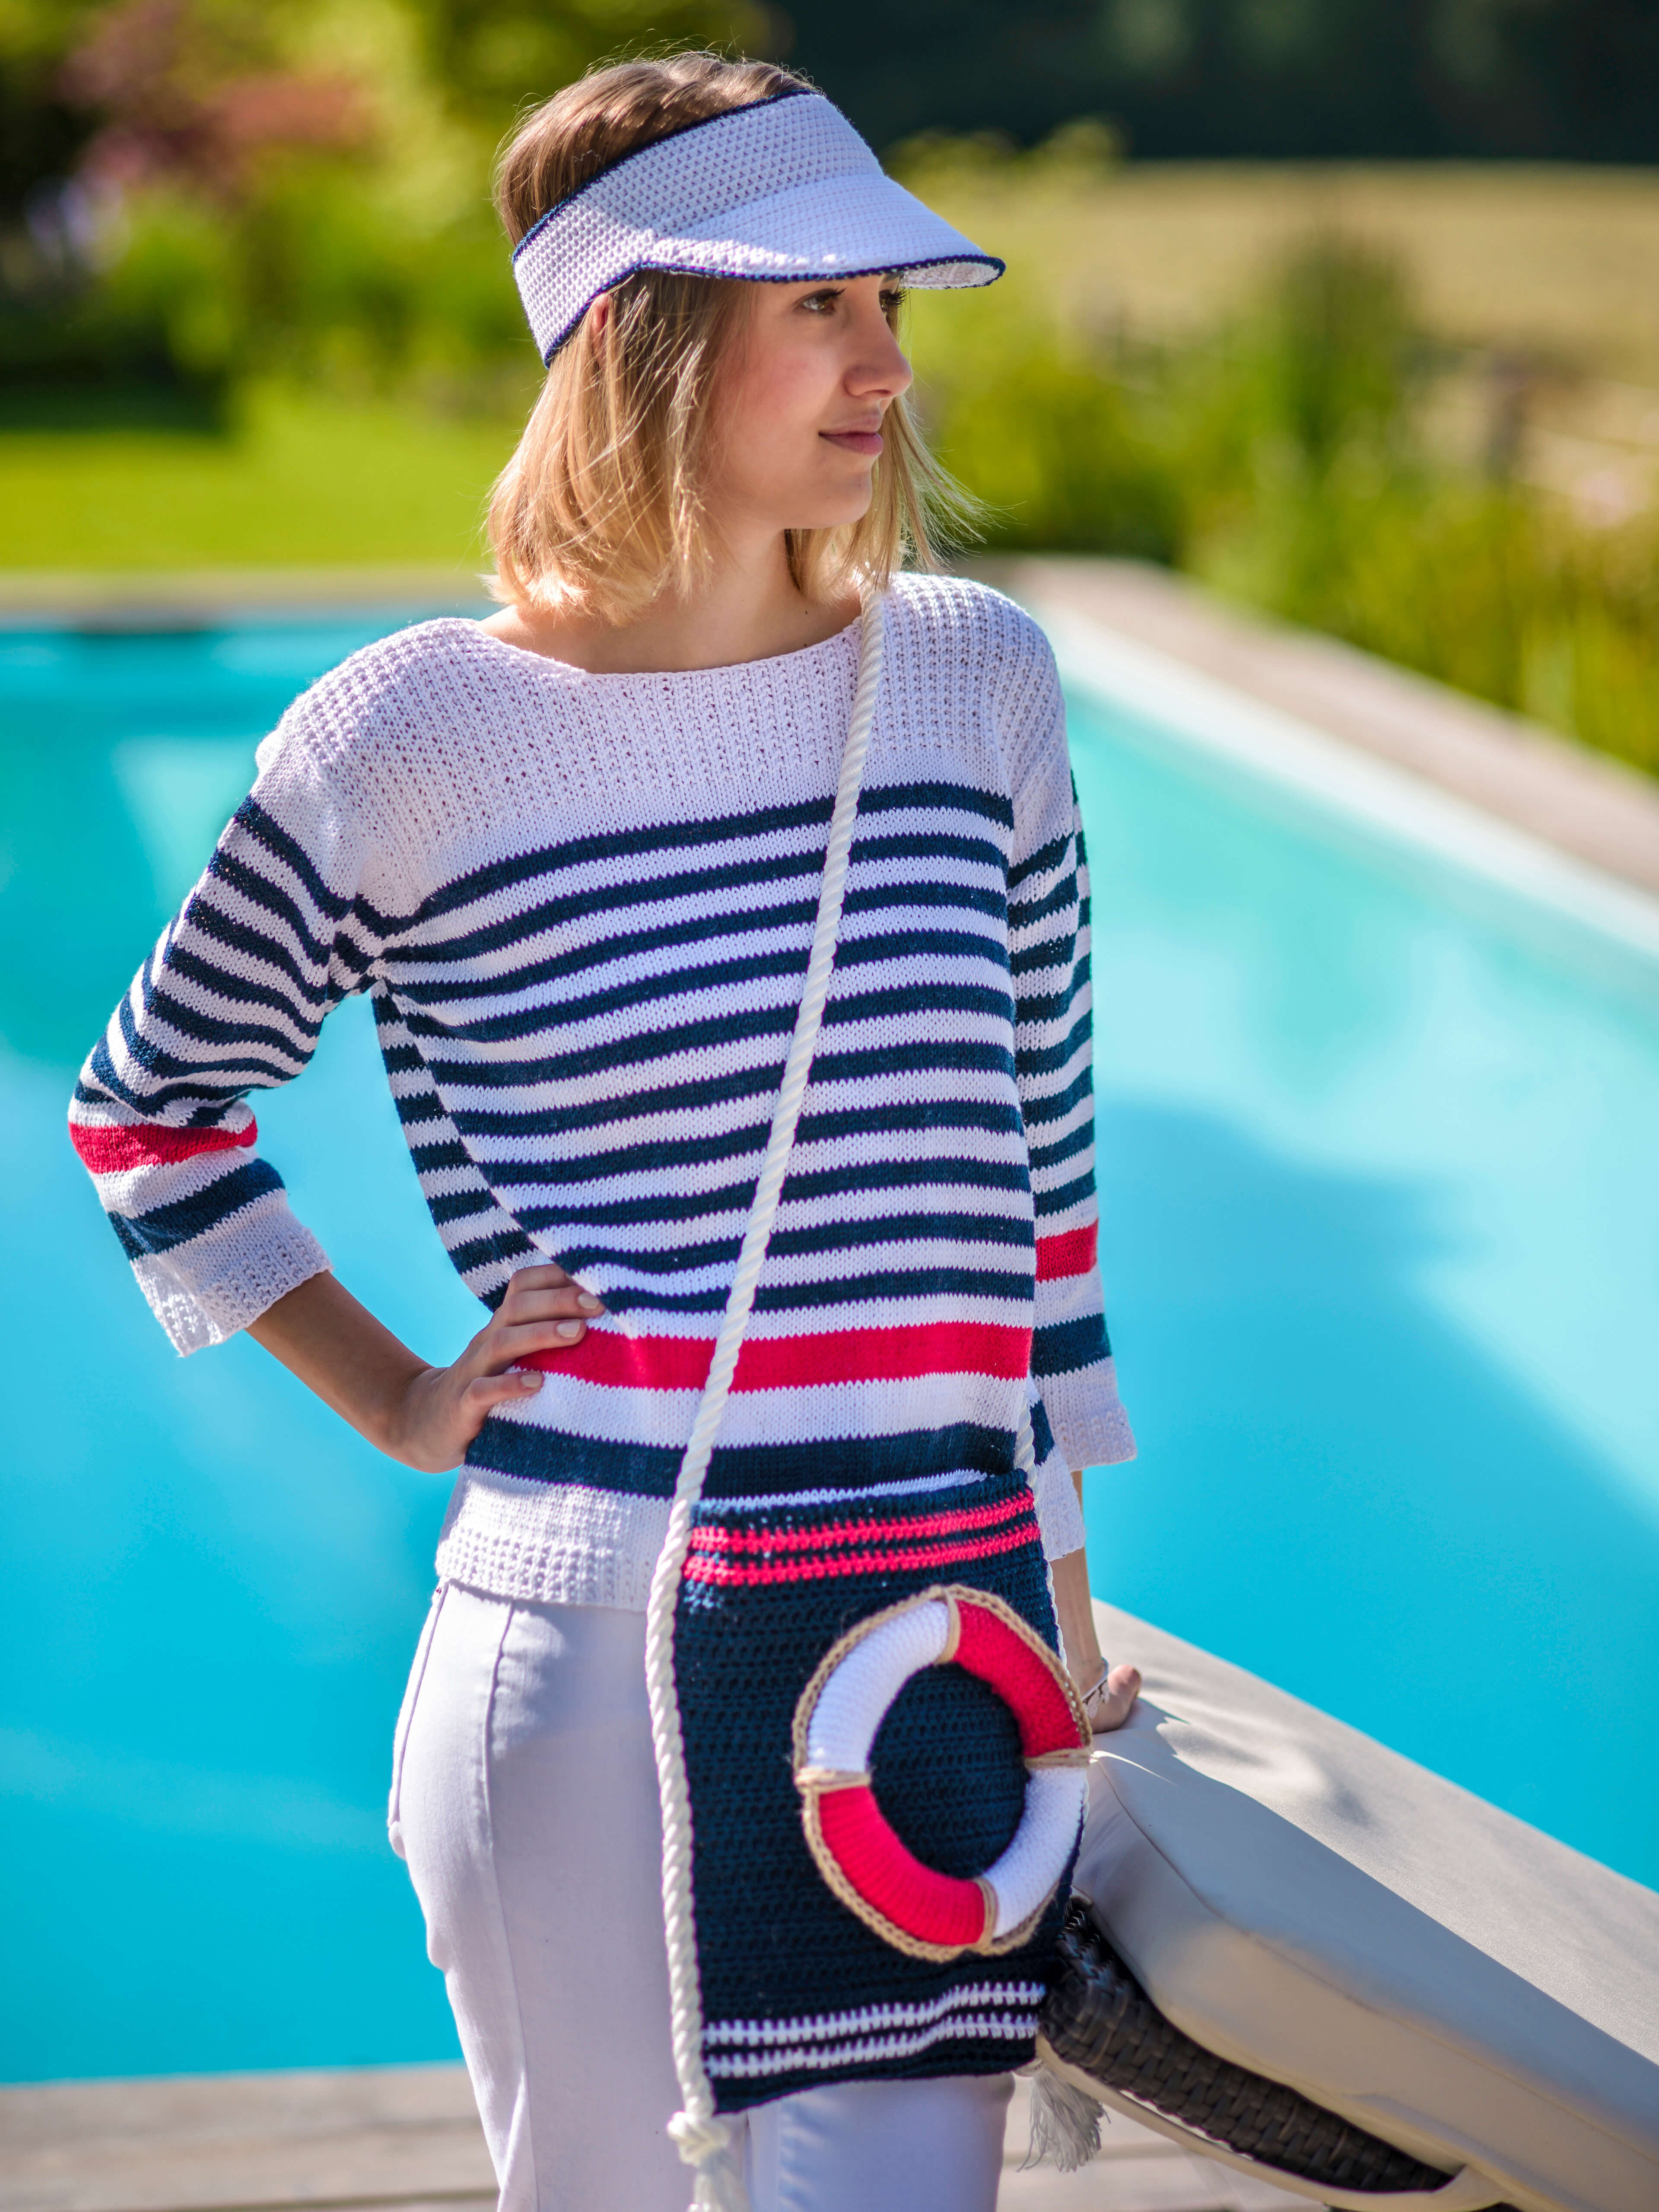 Frau am Pool mit maritimen Outfit aus gestricktem Streifenpullover und Maritimer Tascher mit Rettungsring-Applikation